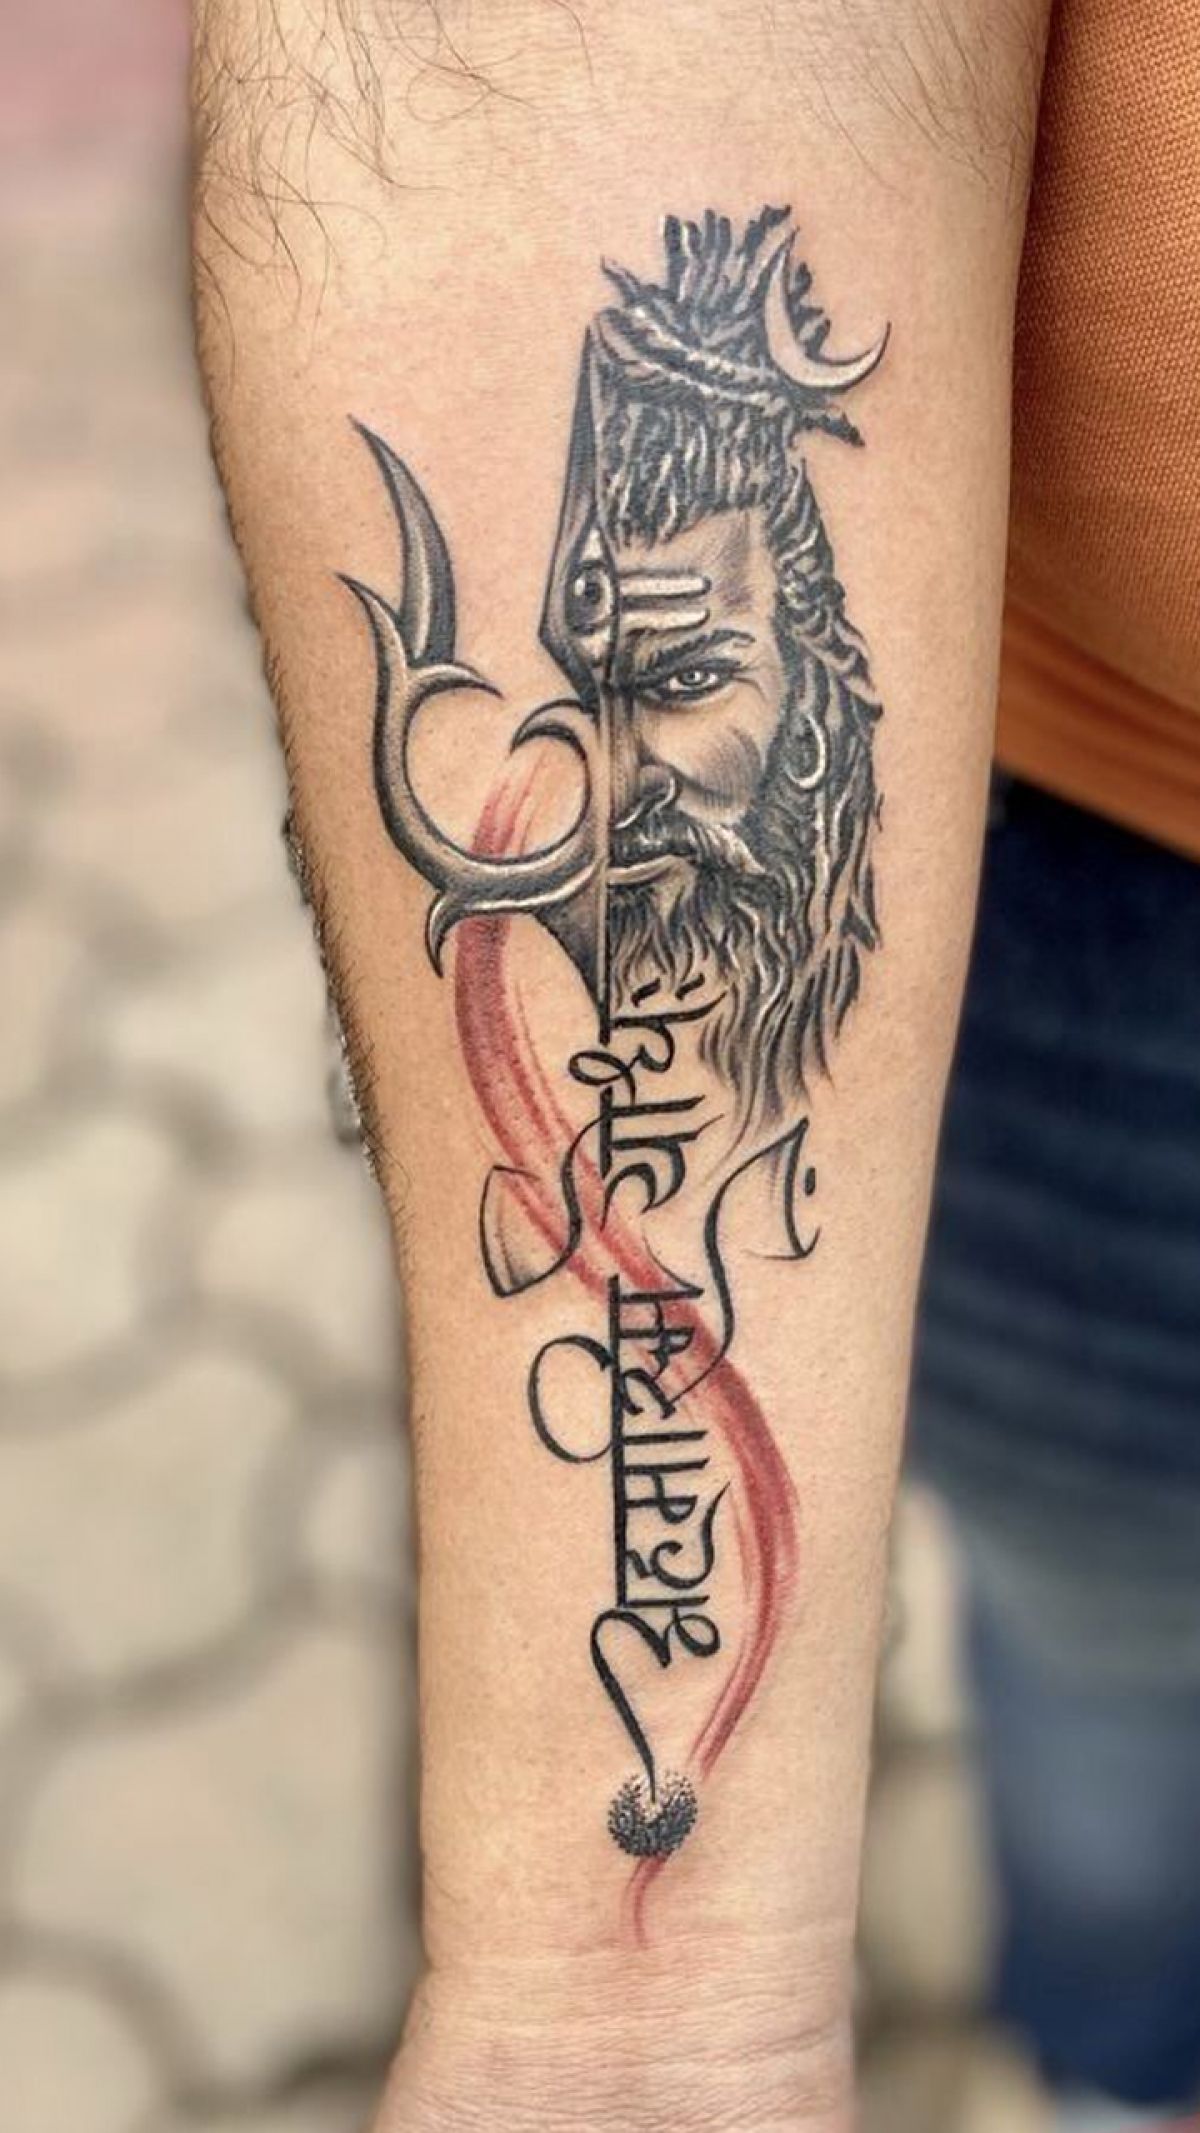 Mahadev tattoo |lord shiva tattoo |Shiva tattoo |Lord mahdev tattoo | Mahadev  tattoo, Lioness tattoo, Trishul tattoo designs